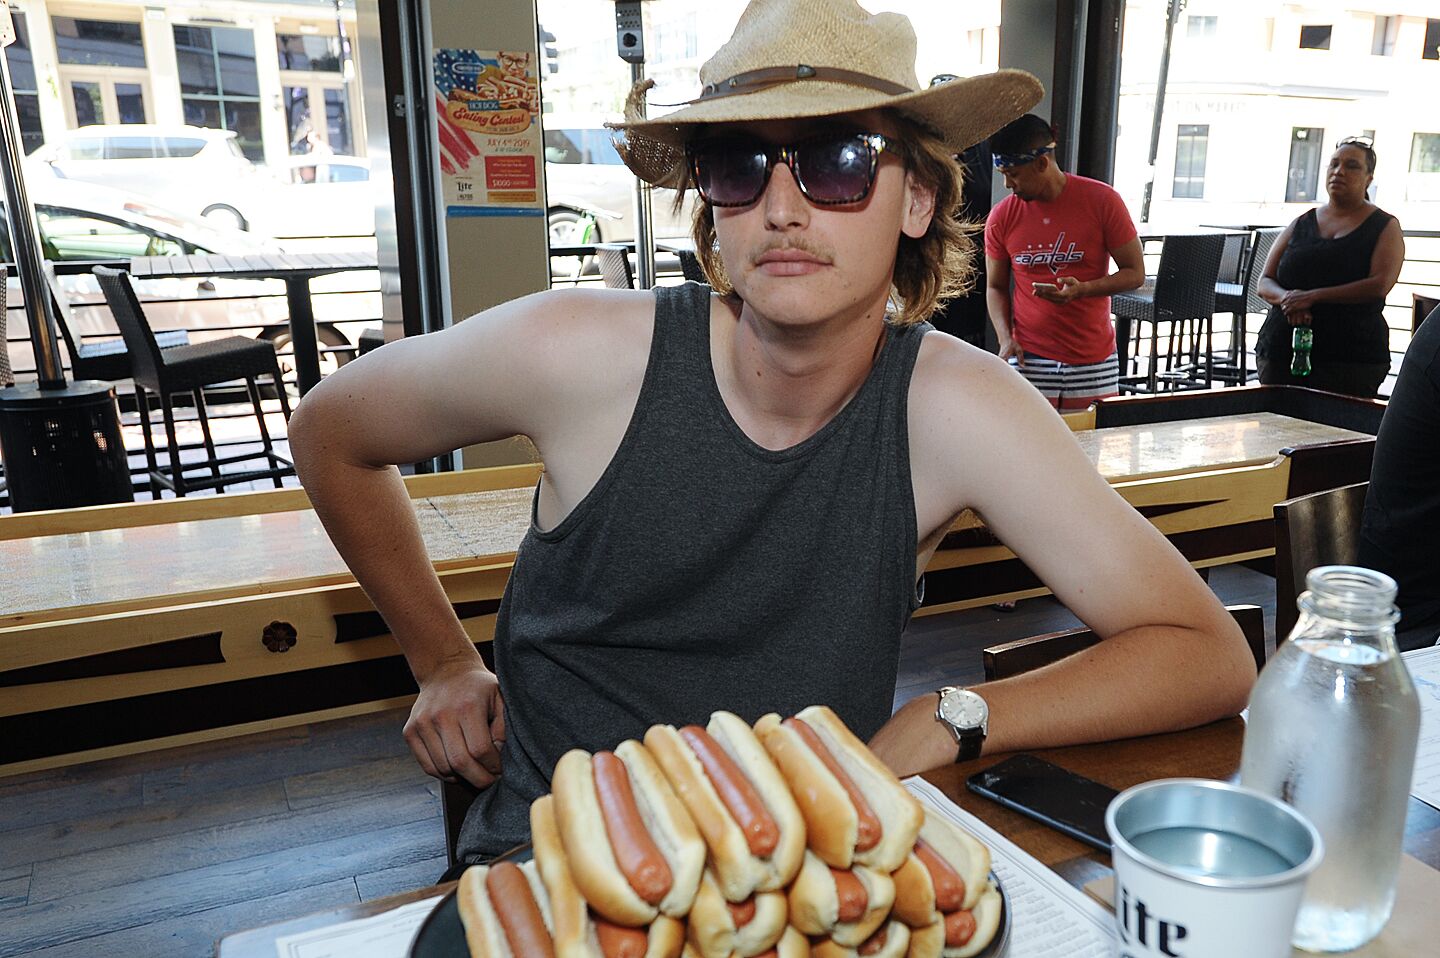 Hot Dog Eating Contest at The Smoking Gun